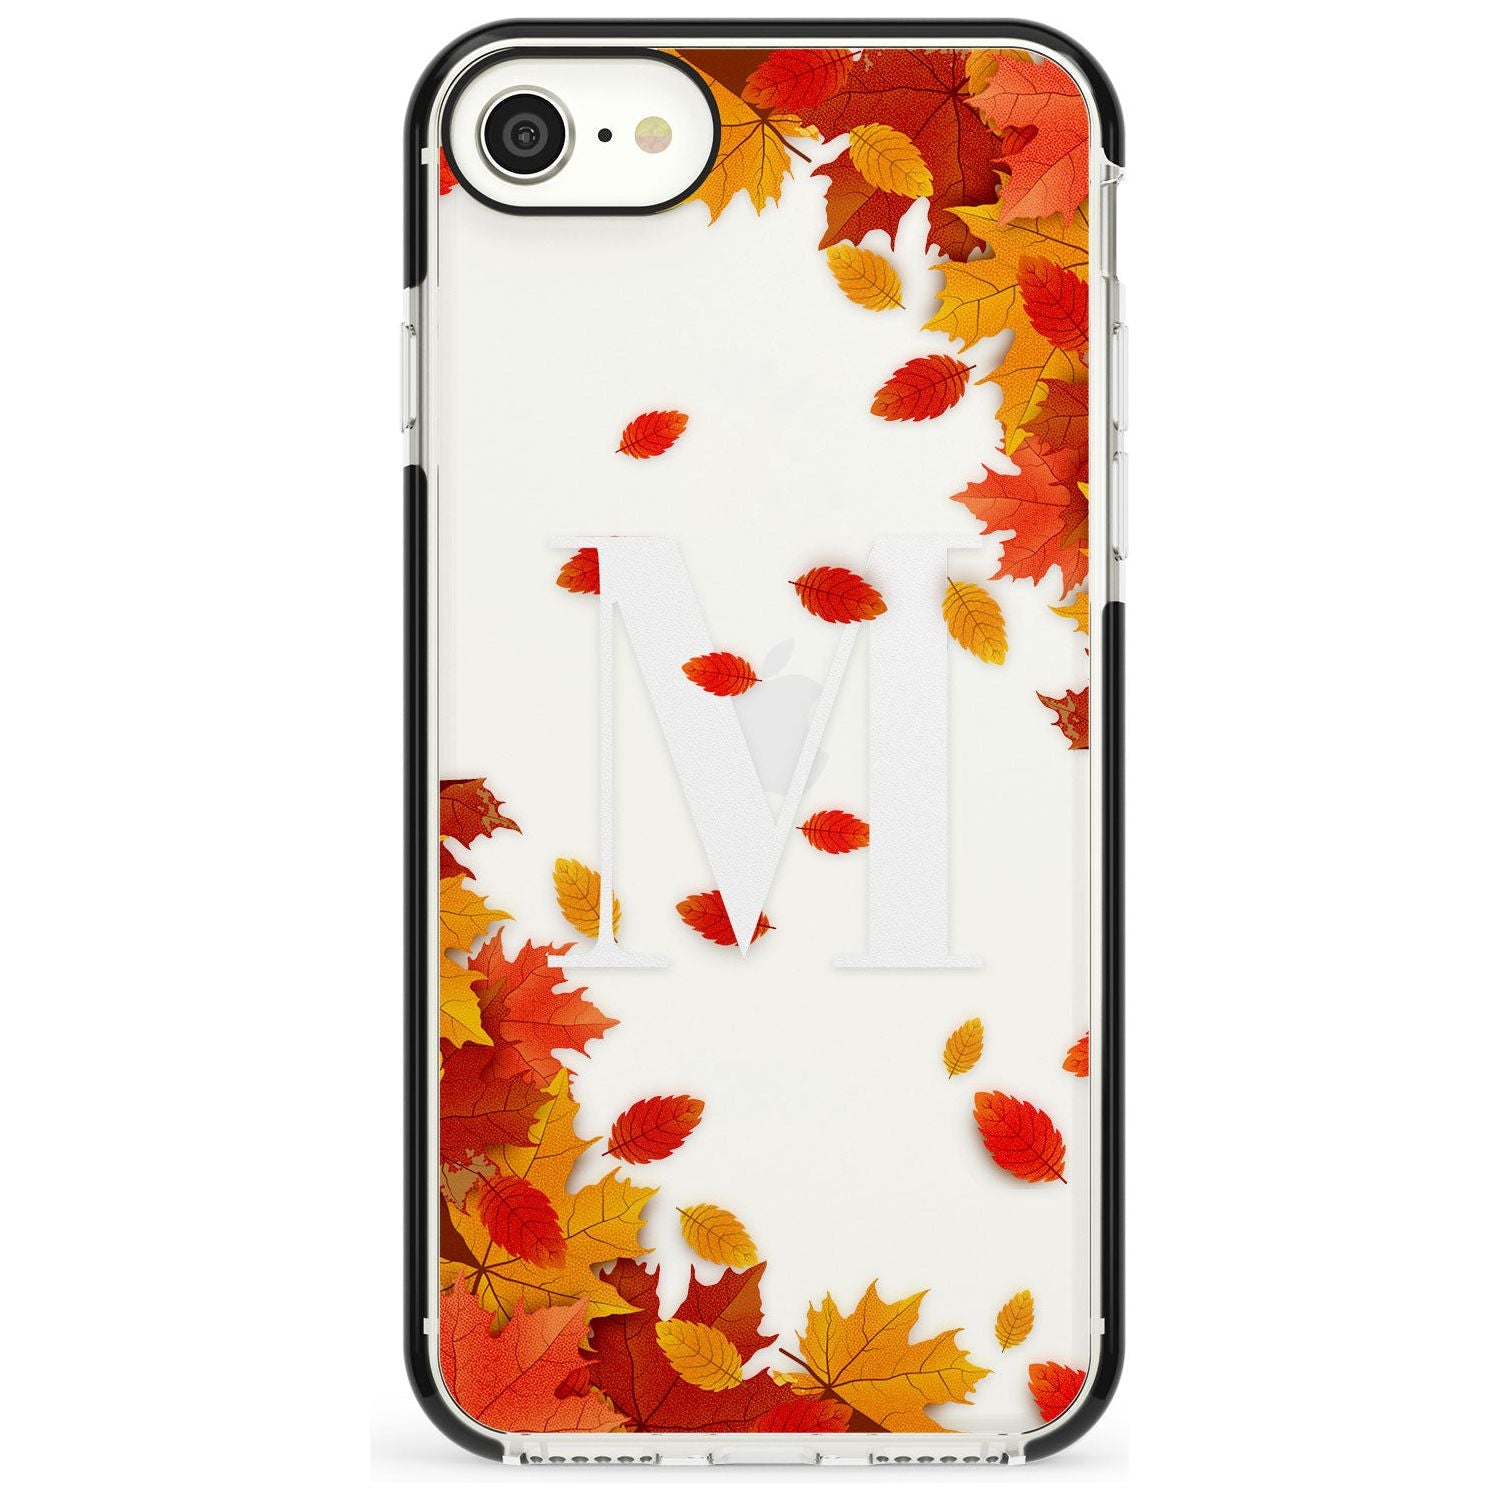 Personalised Monogram Autumn Leaves Black Impact Phone Case for iPhone SE 8 7 Plus